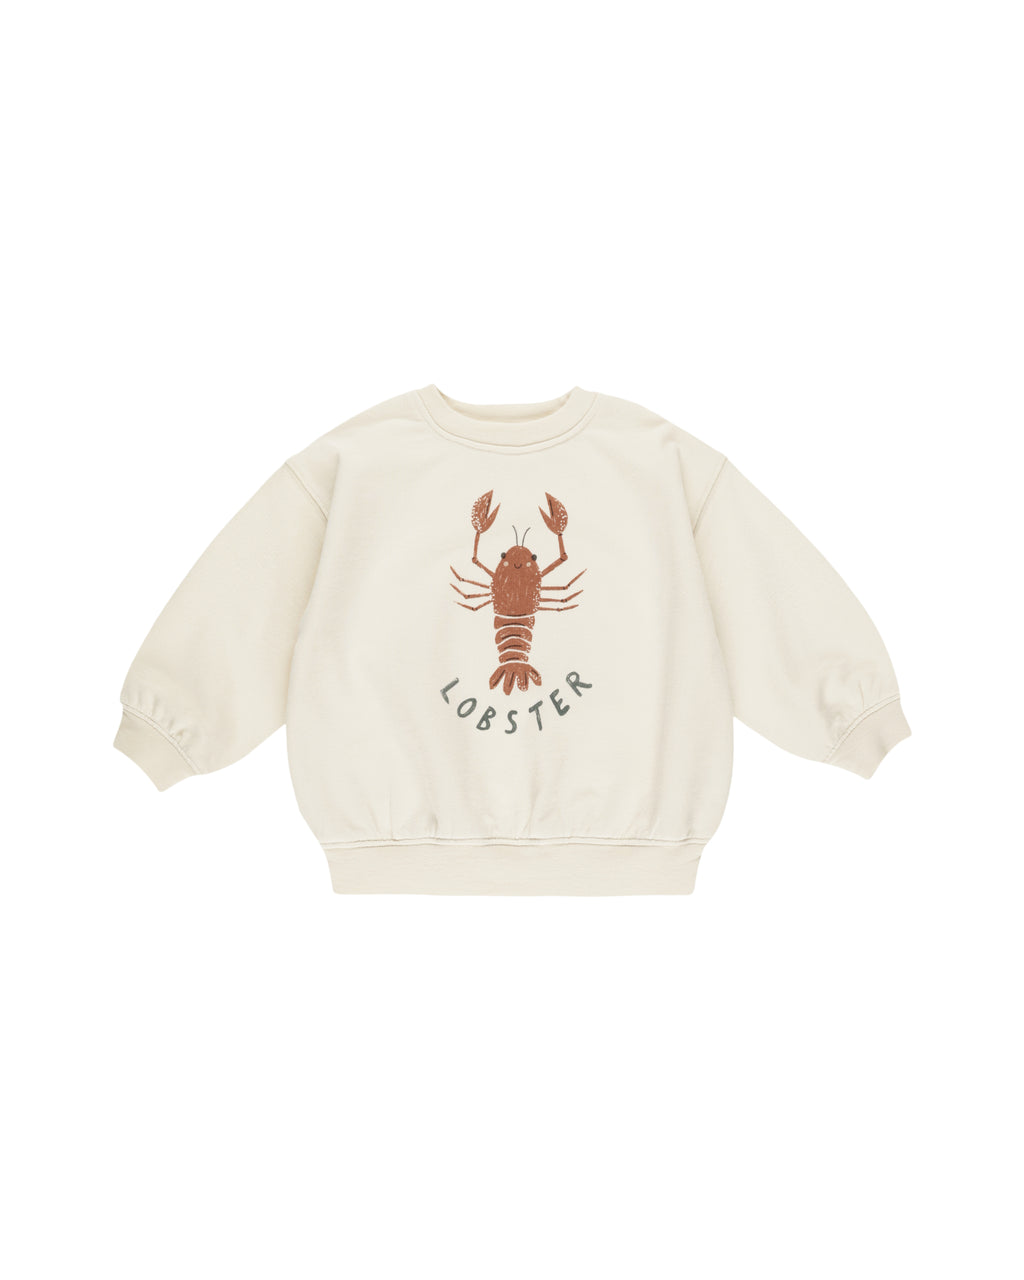 Rylee + Cru Sweatshirt in Lobster